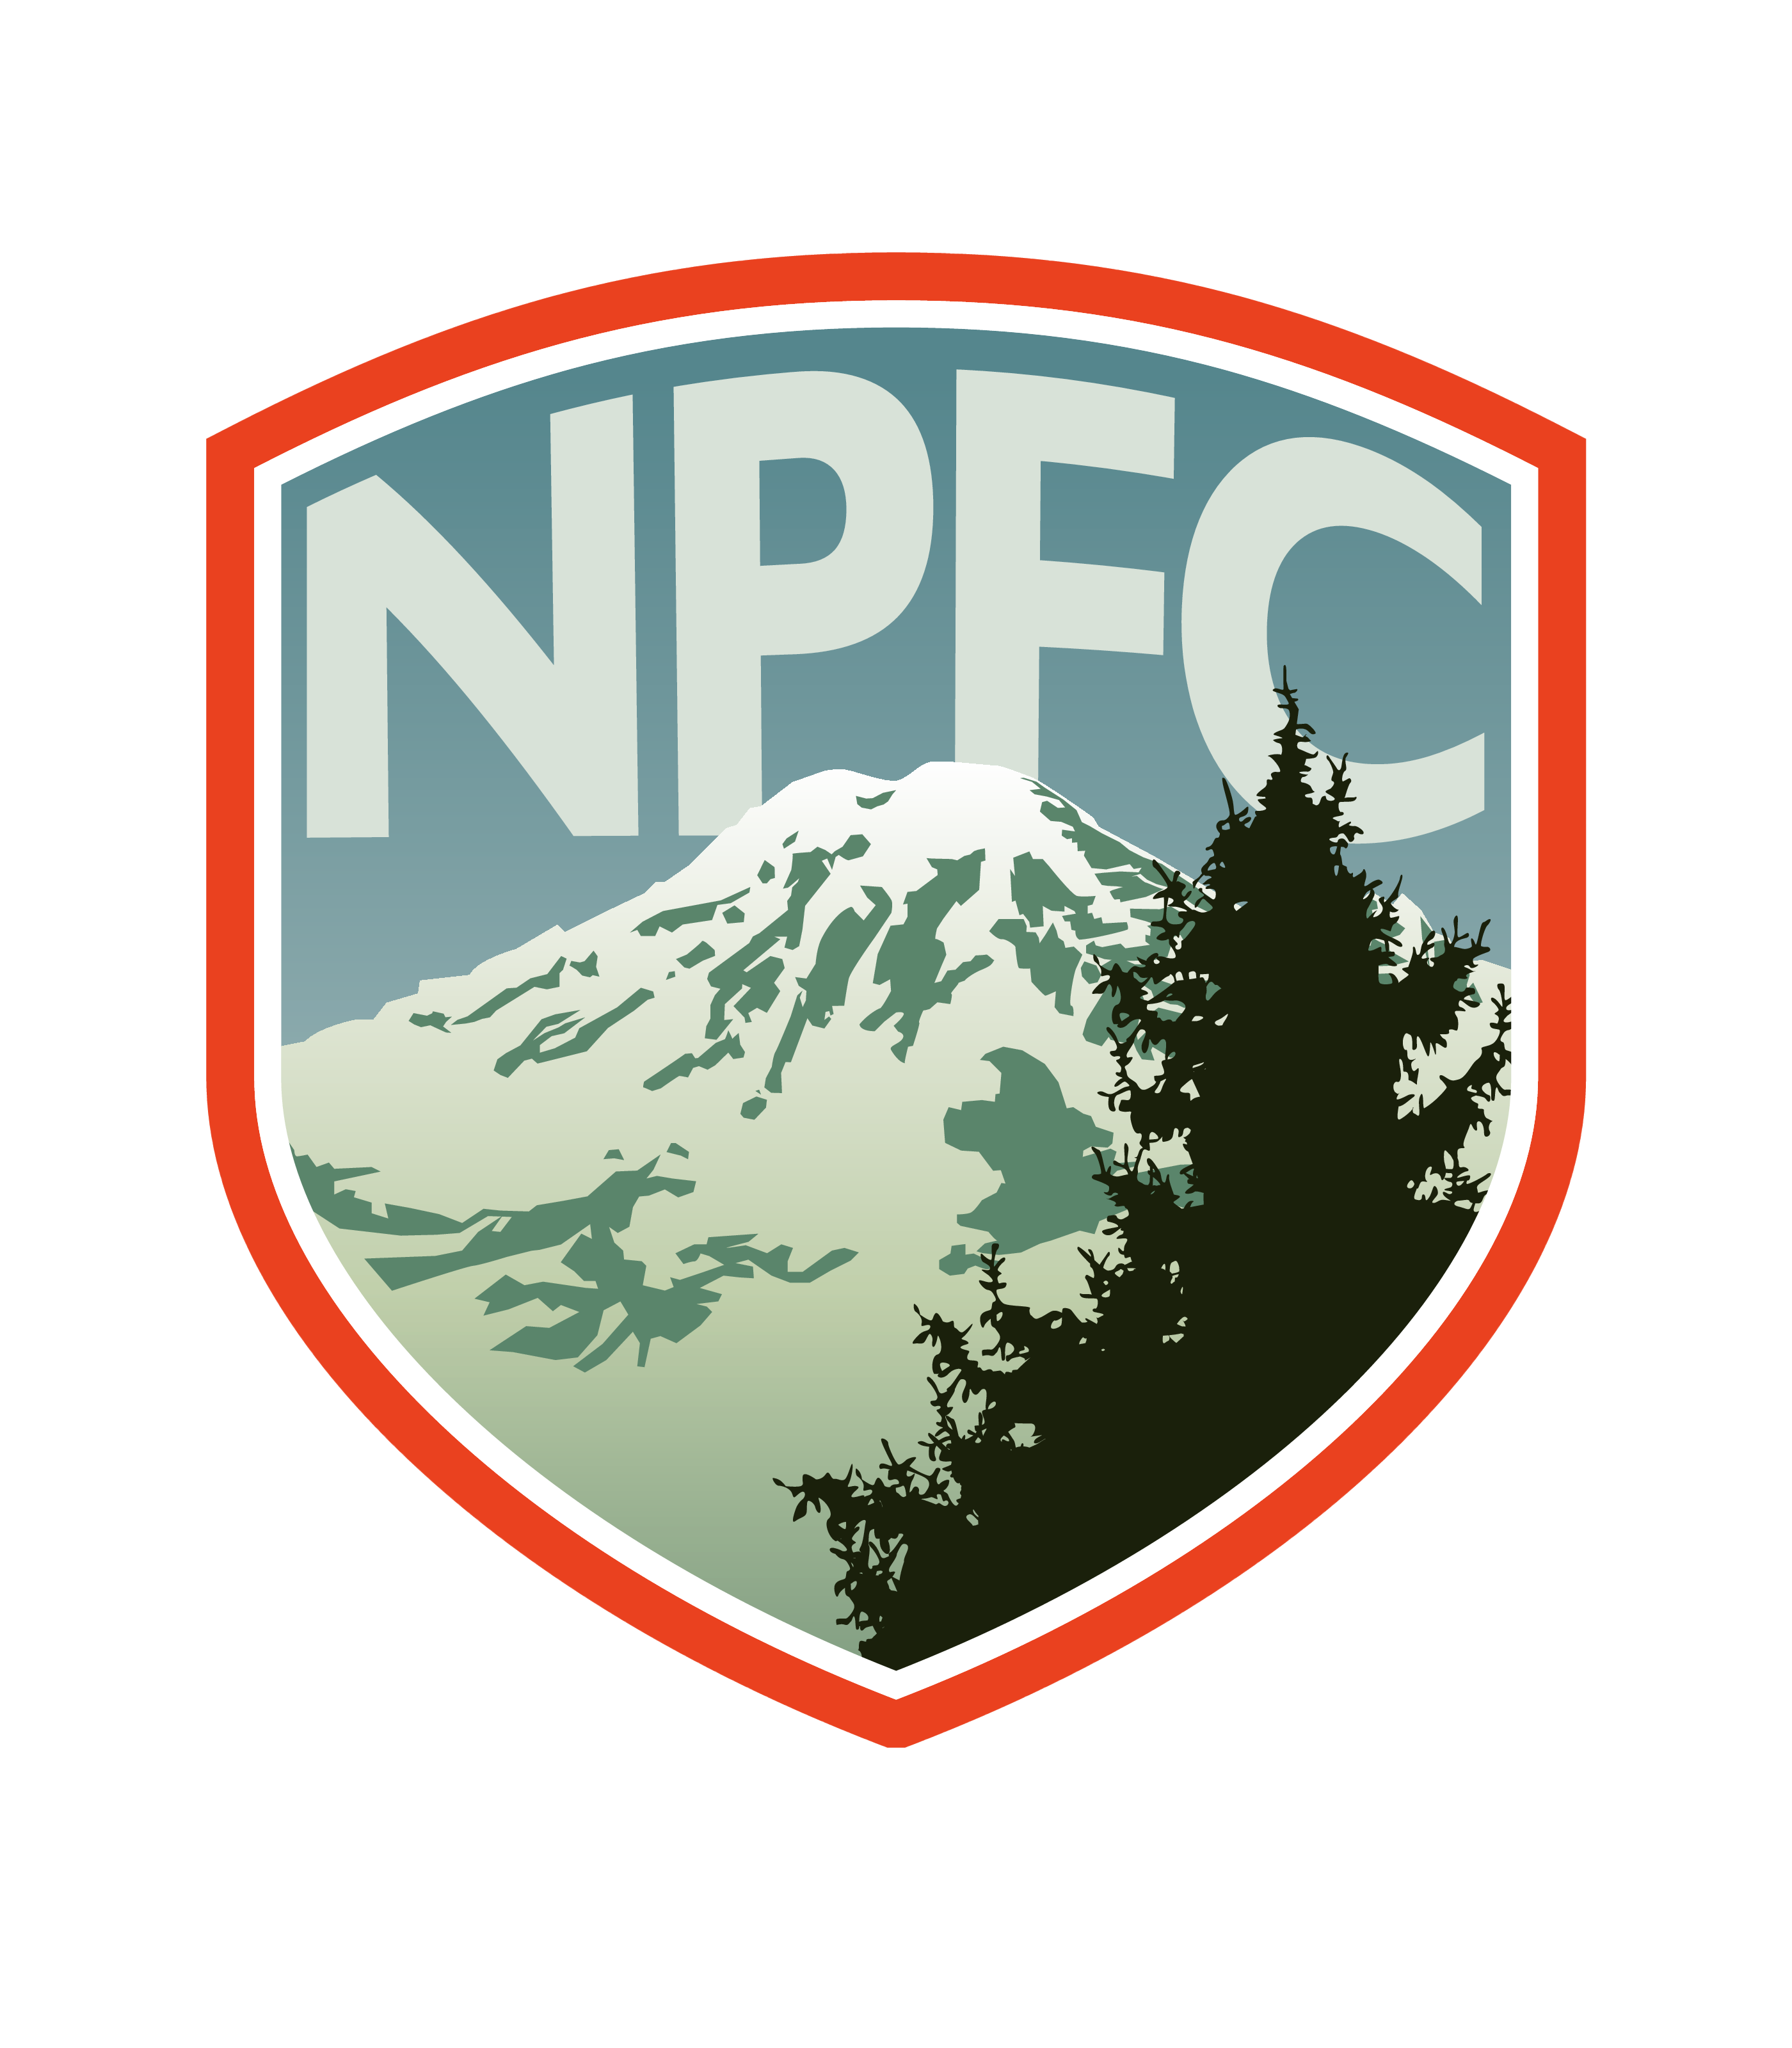 Northern Peninsula FC